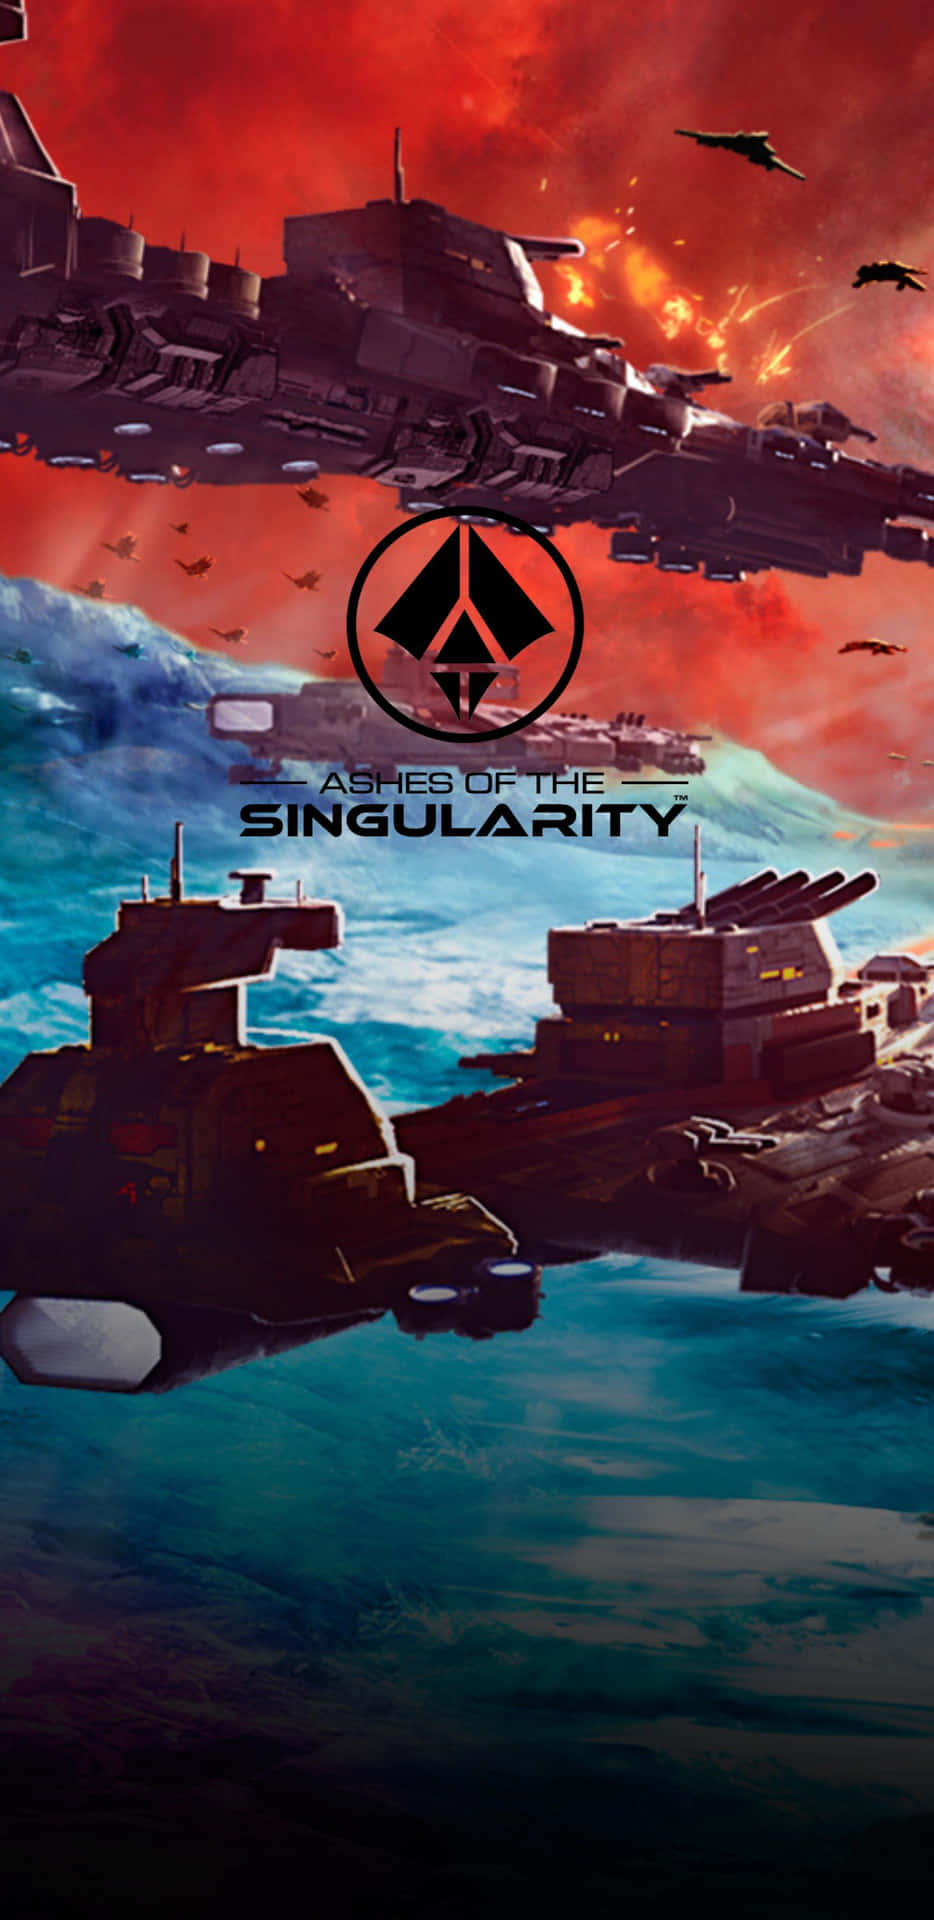 Giocaad Ashes Of The Singularity, Un Nuovo Epico Gioco Di Strategia, Sul Pixel 3xl.